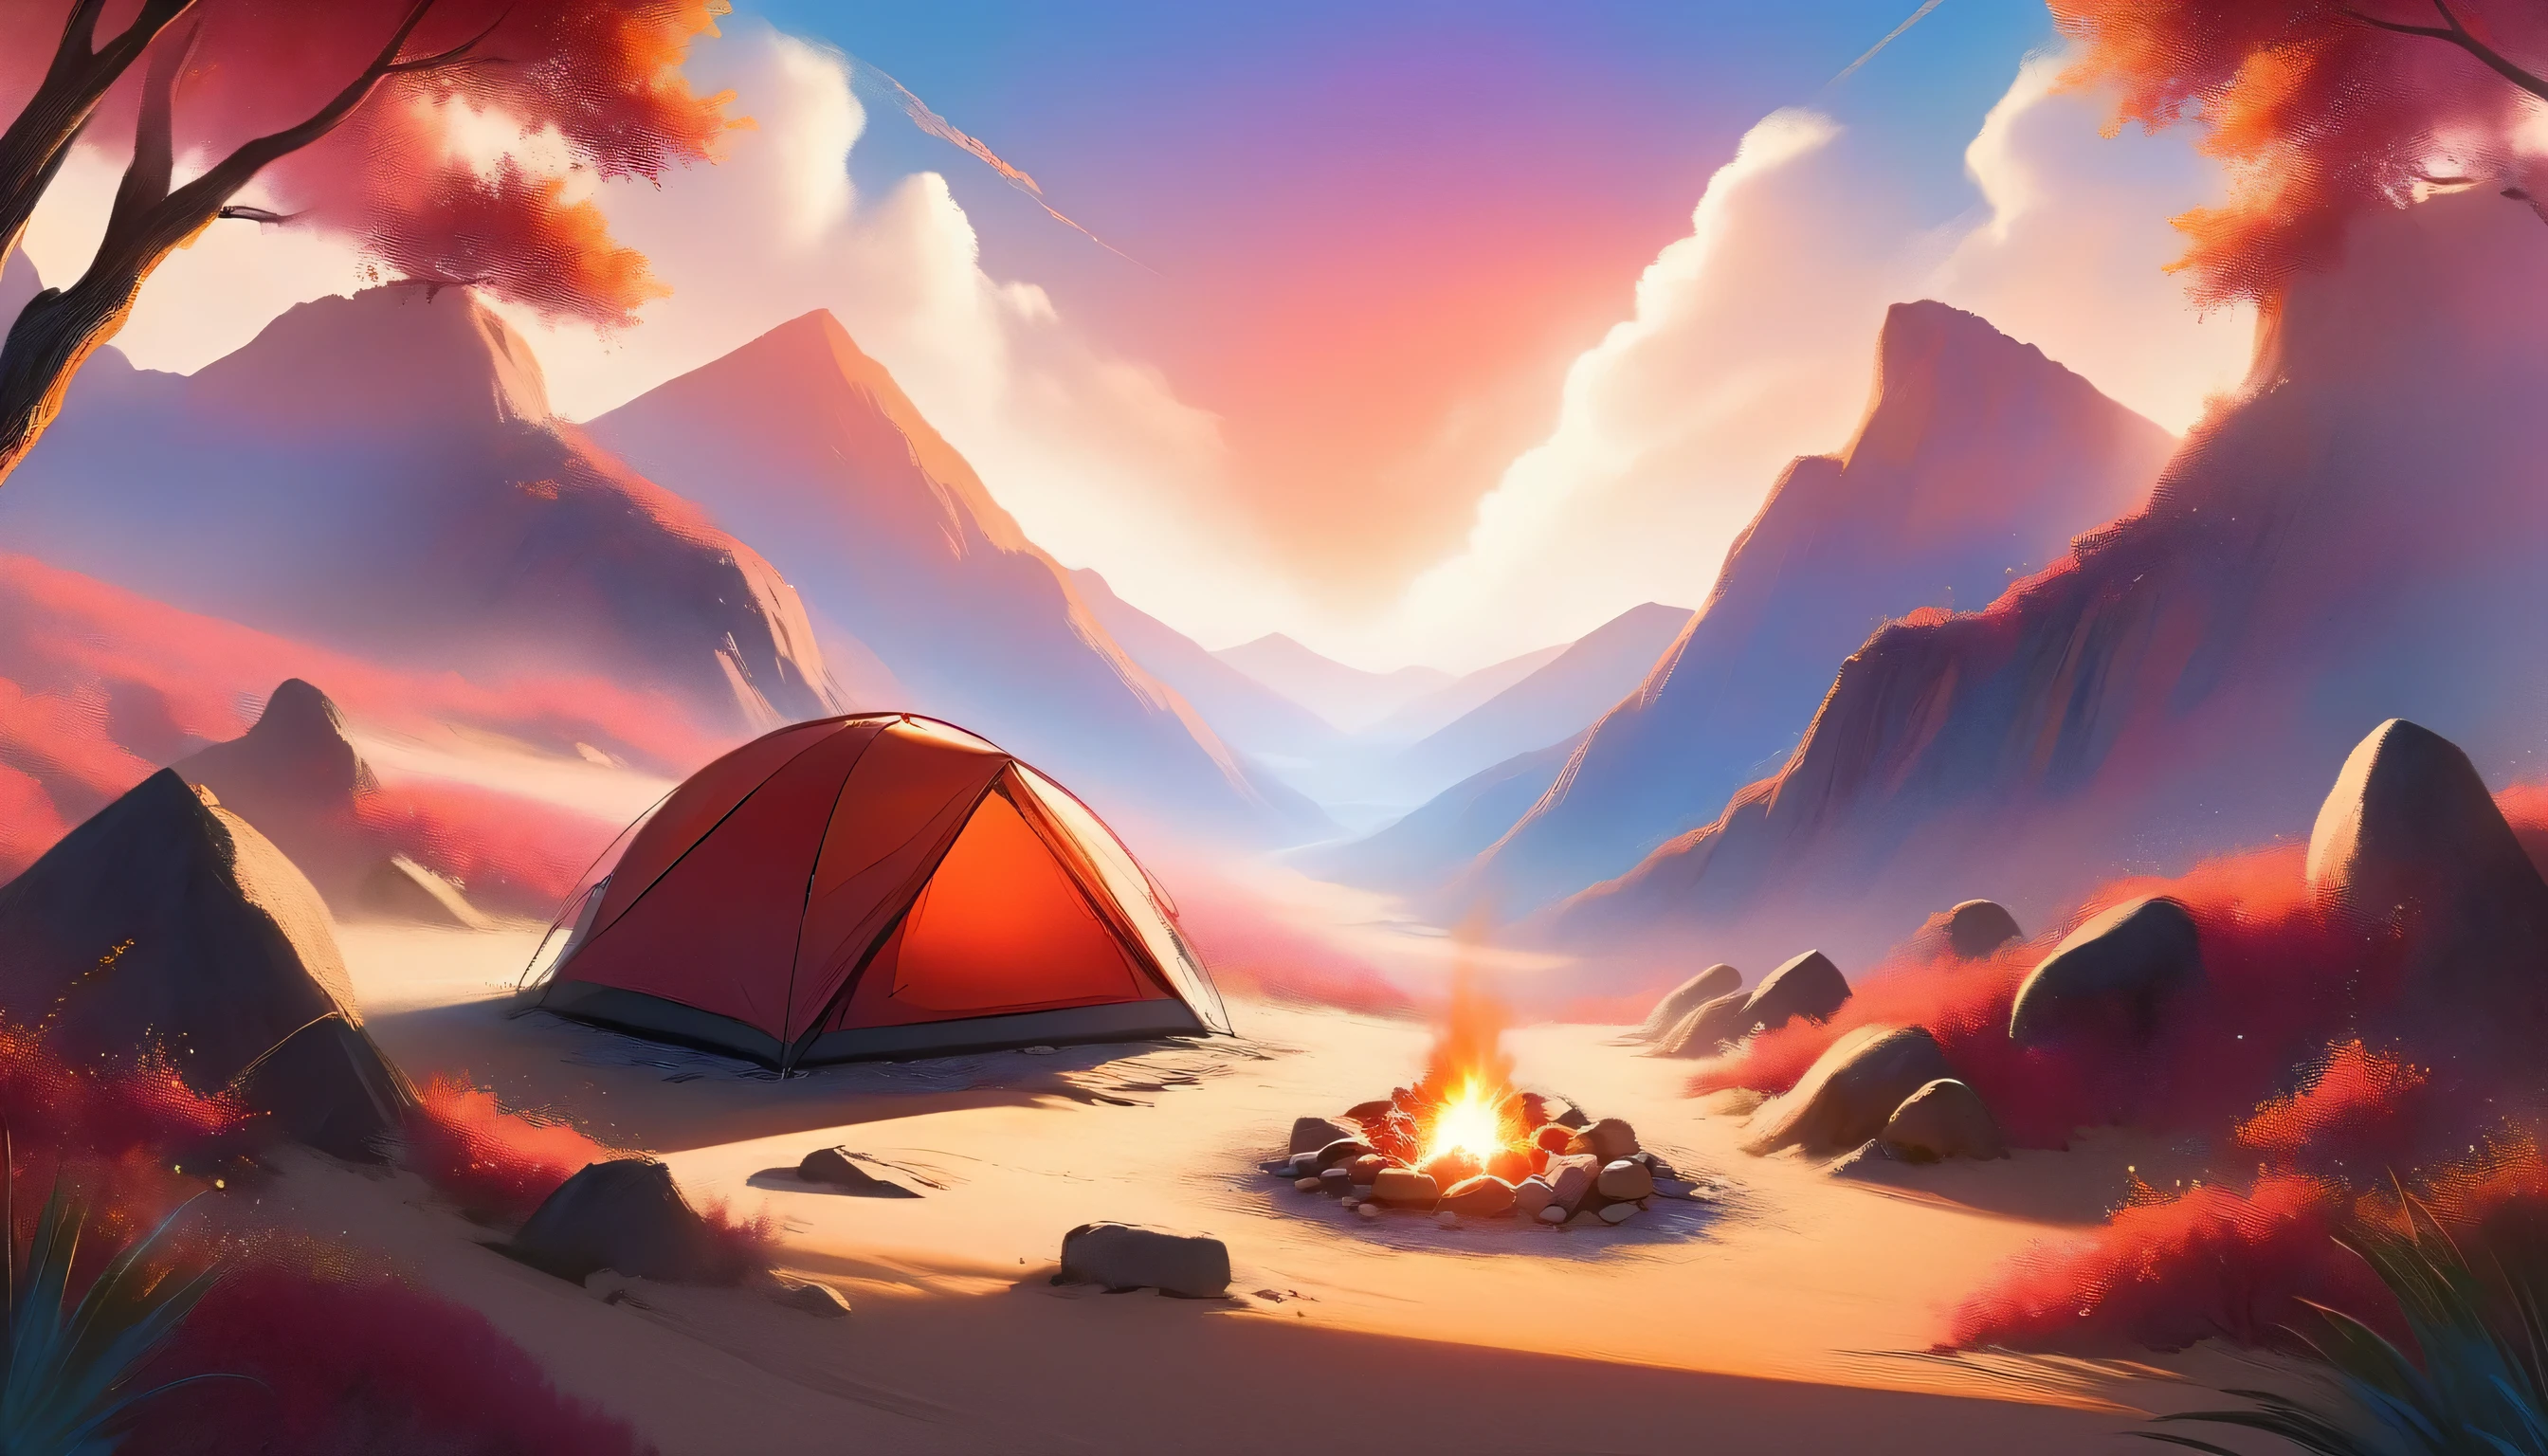 Arafed, une photo d&#39;un camping (Tente: 1.2) et petit (feu de camp: 1.3) ((près)) the Tente, au sommet d&#39;une montagne déserte, son coucher de soleil, le ciel est dans différentes nuances de  (rouge: 1.1), (orange: 1.1), (Azur: 1.1) (violet:1.1) il y a de la fumée qui s&#39;élève du camp de pompiers, il y a une vue magnifique sur le canyon et les ravins du désert, il y a des arbres rares à l&#39;horizon, c&#39;est un moment de sérénité, paix, et détente, meilleure qualité, 16k,  photoréalisme, Séance photo primée par le National Geographic, plan ultra large, nébuleuse enragée, ombre de dame